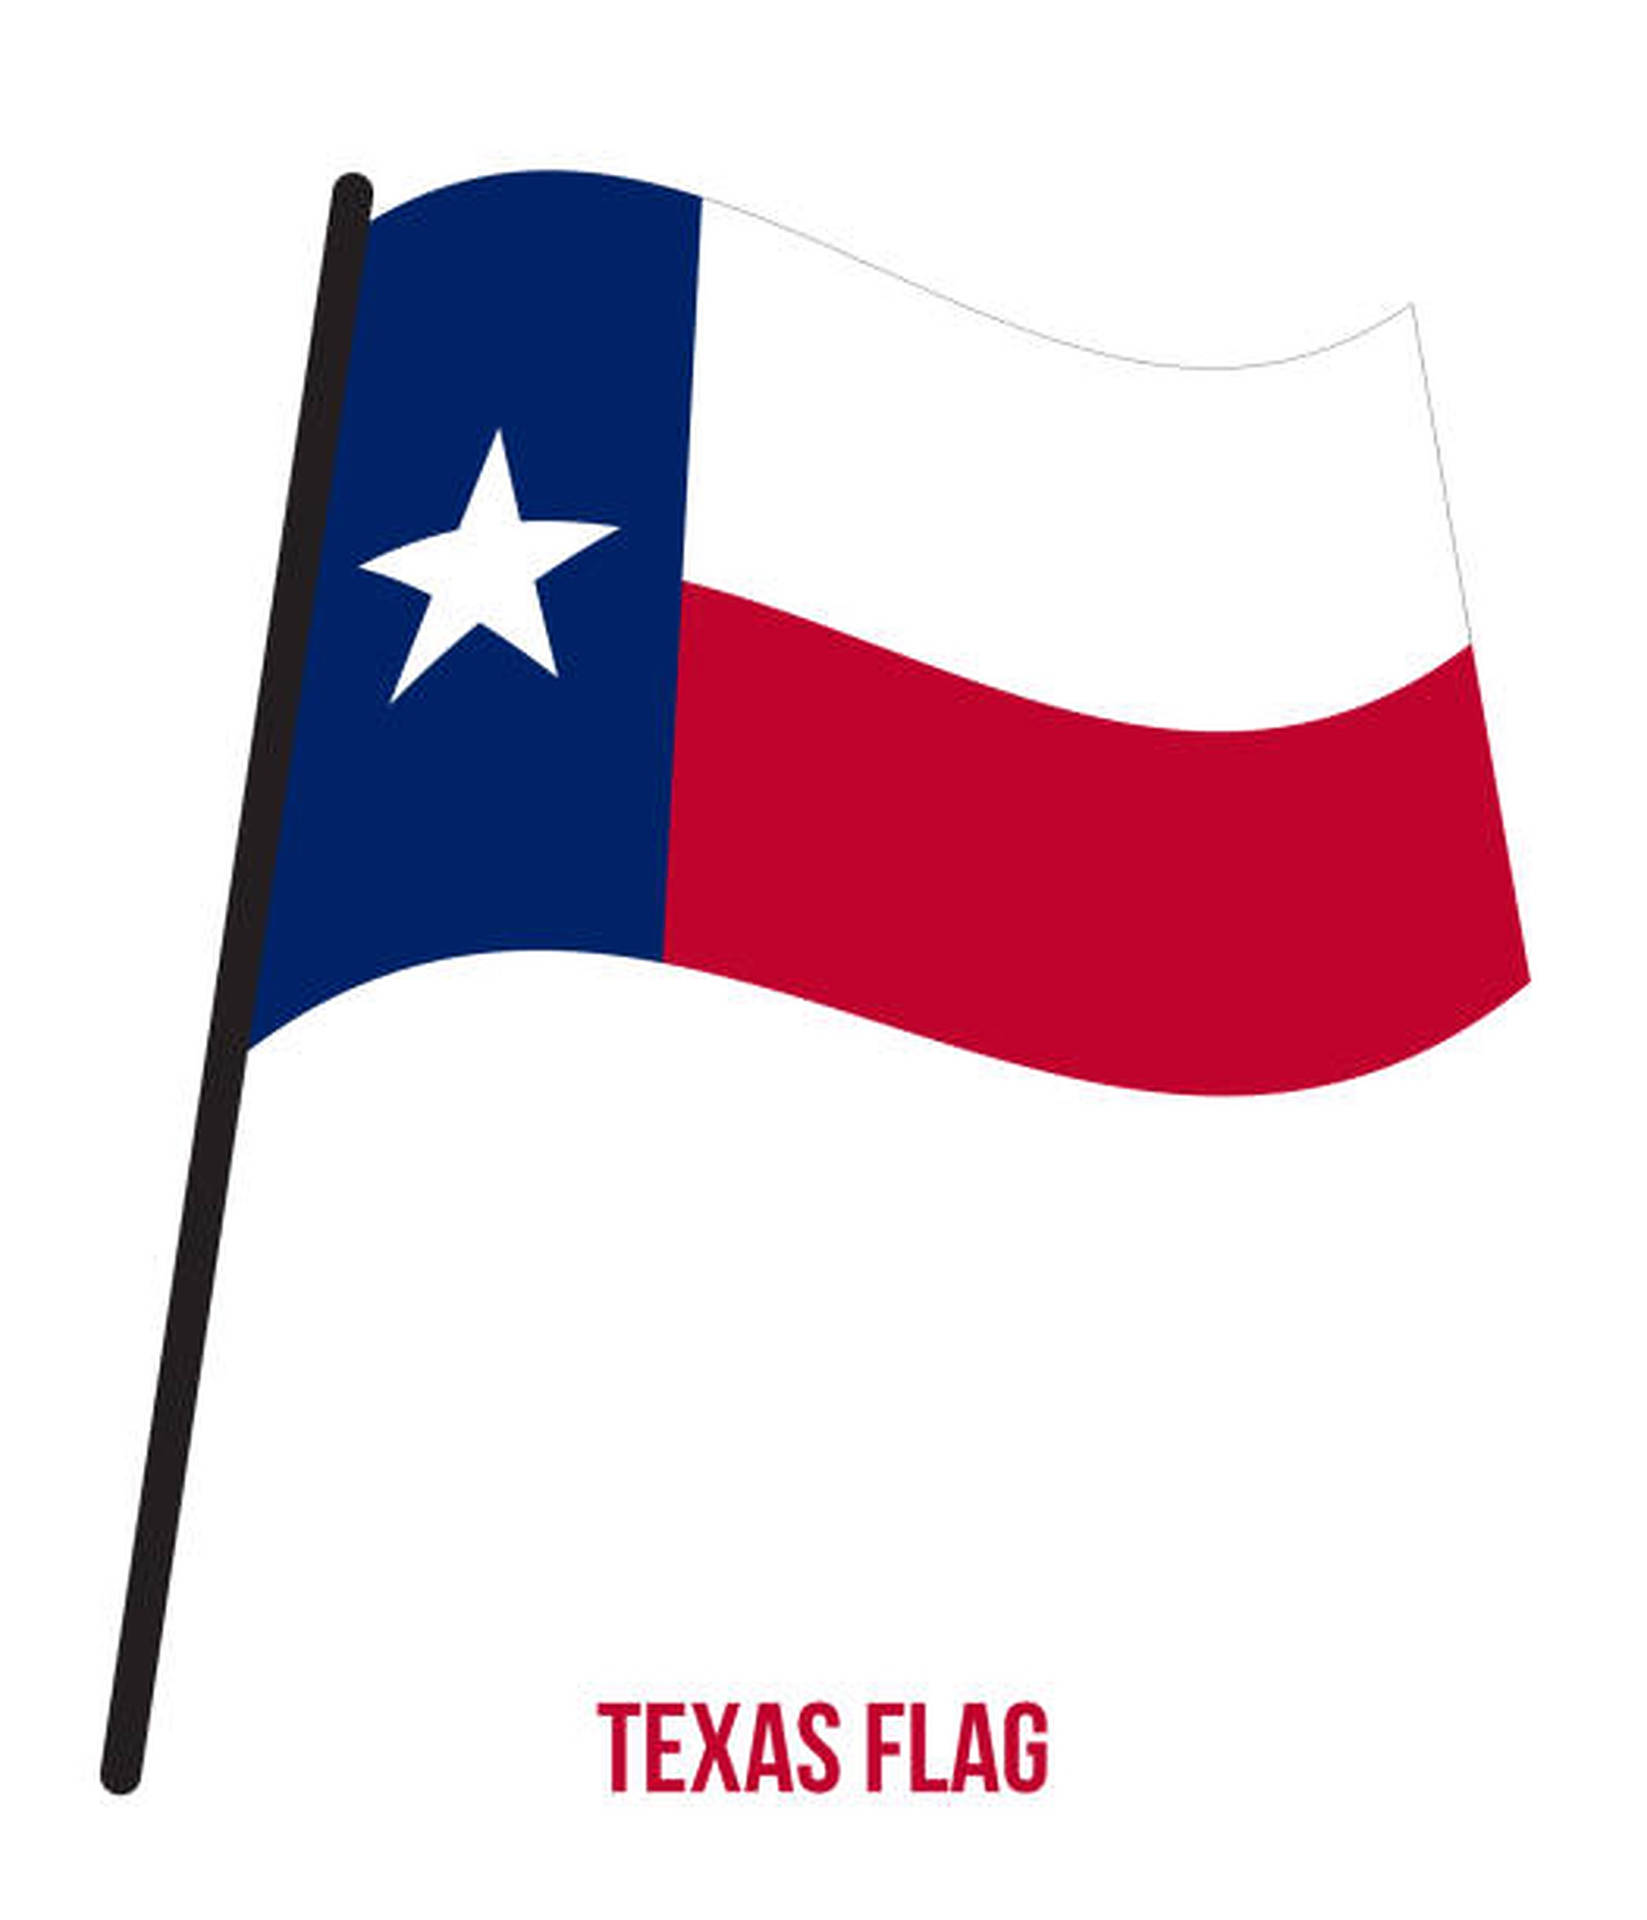 Texas Flag Illustration Wallpaper